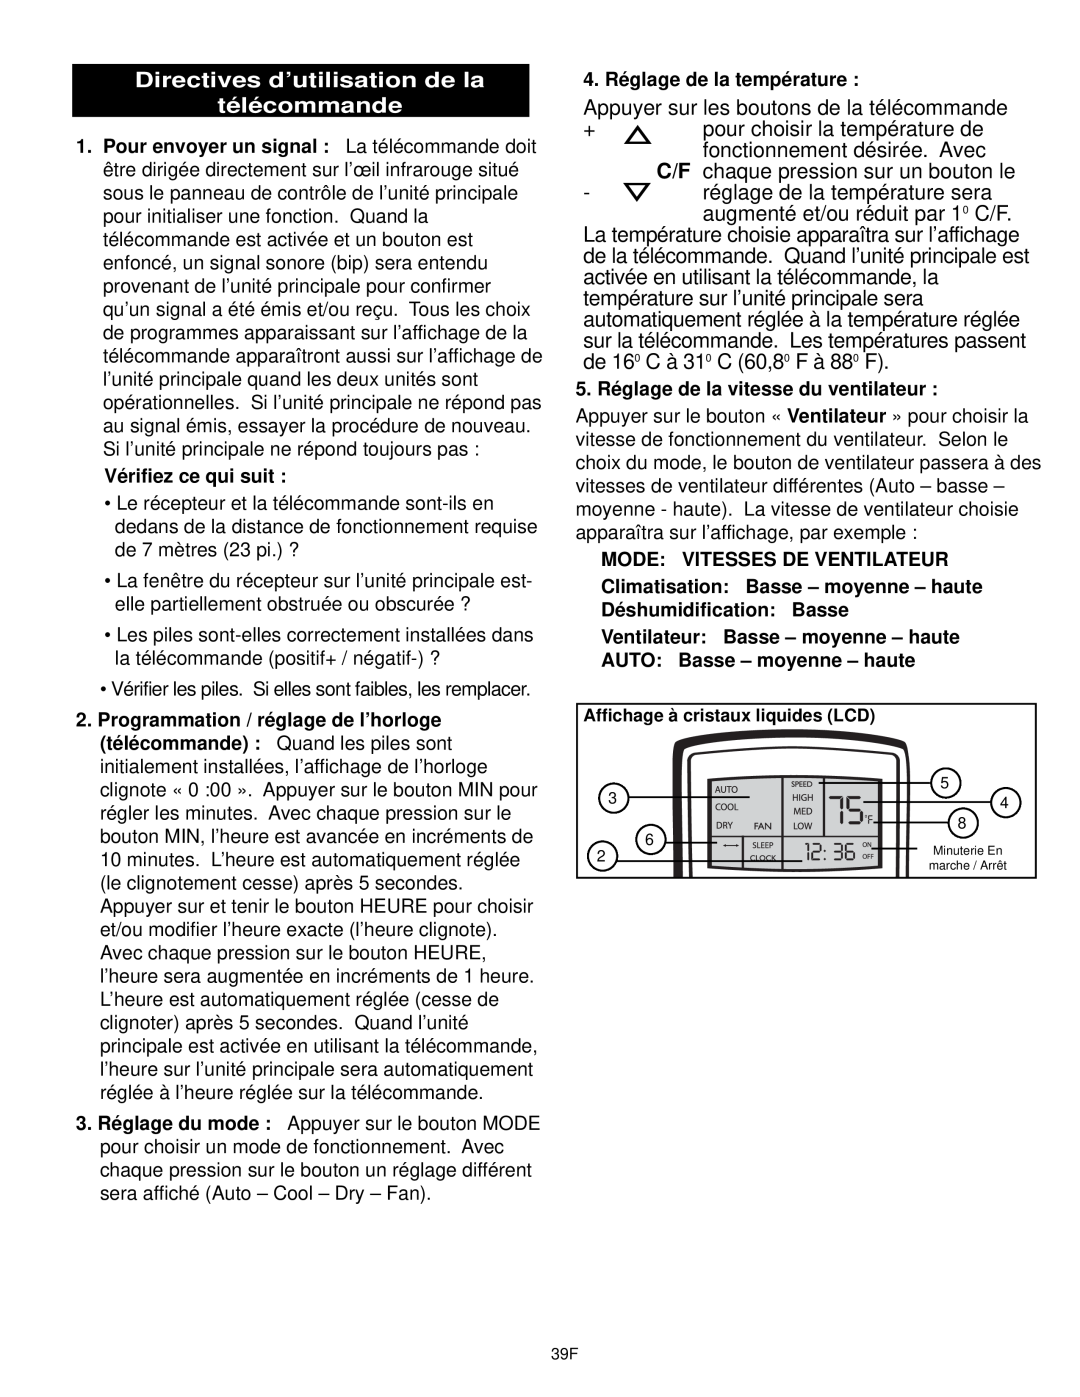 Danby DPAC10030 manual Directives d’utilisation de la télécommande, Appuyer sur les boutons de la télécommande 